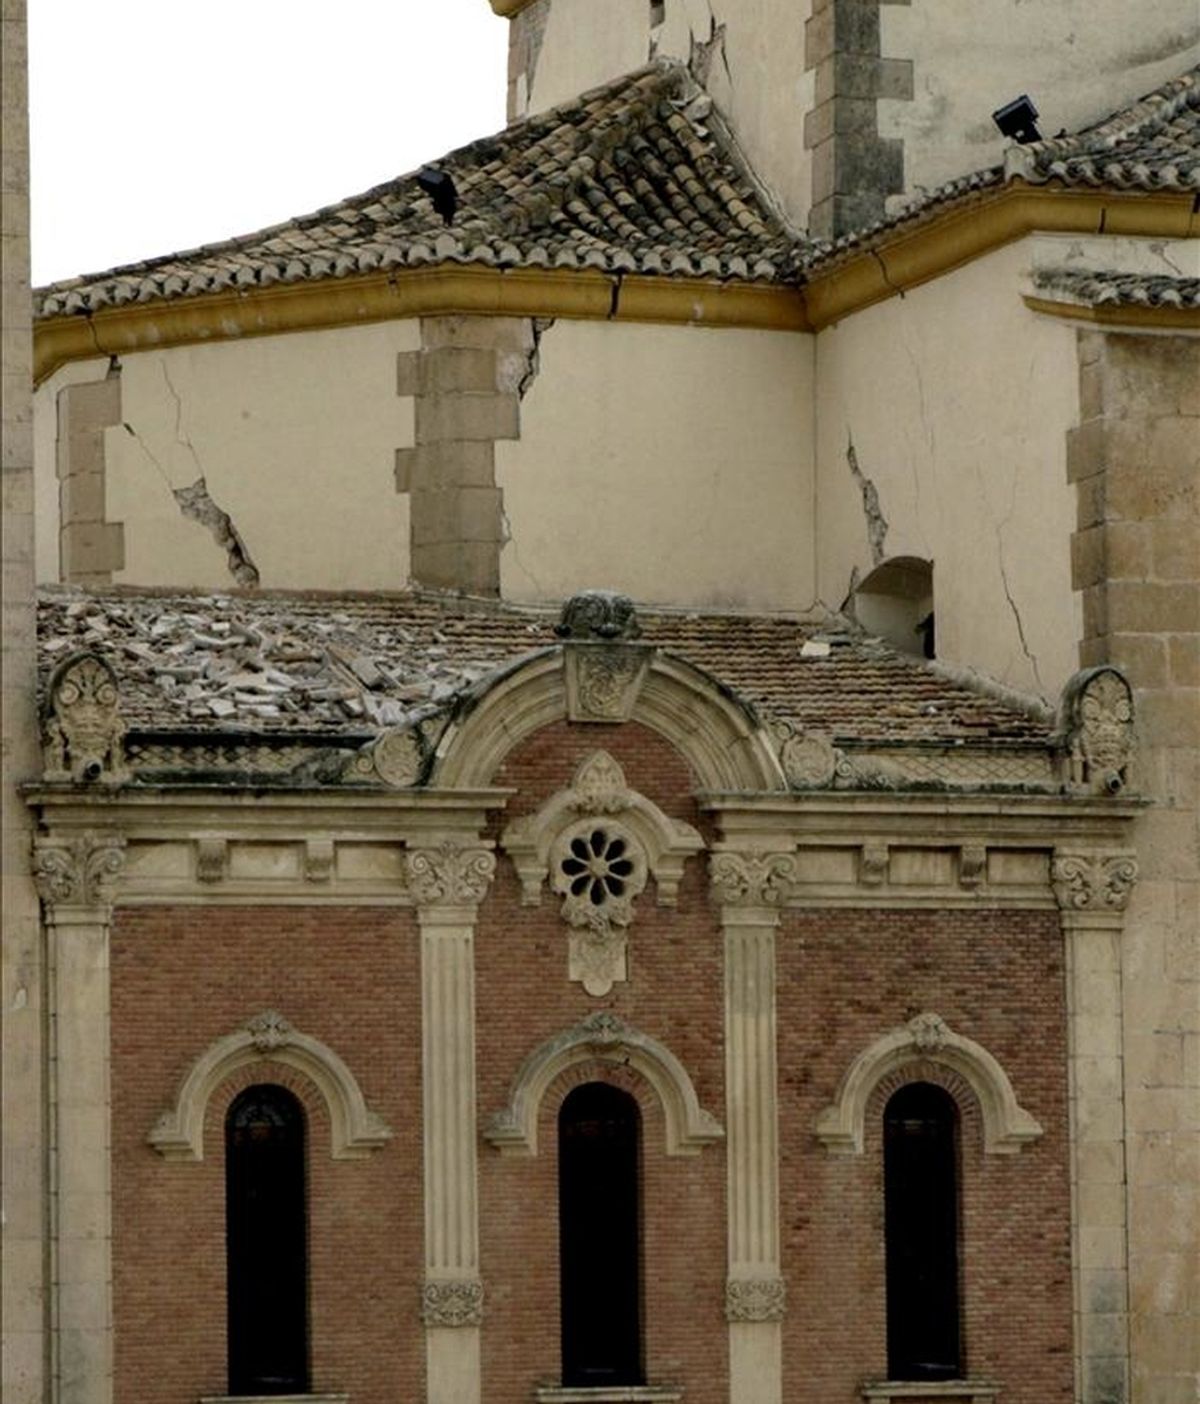 La cúpula de la iglesia de la Virgen de las Huertas que resultó seriamente dañada a causa del terremoto de 5,1 grados en la escala de Richter que sacudió este miércoles la ciudad de Lorca (sureste español) y en el que nueve personas han muerto y casi 300 han resultado heridas. EFE